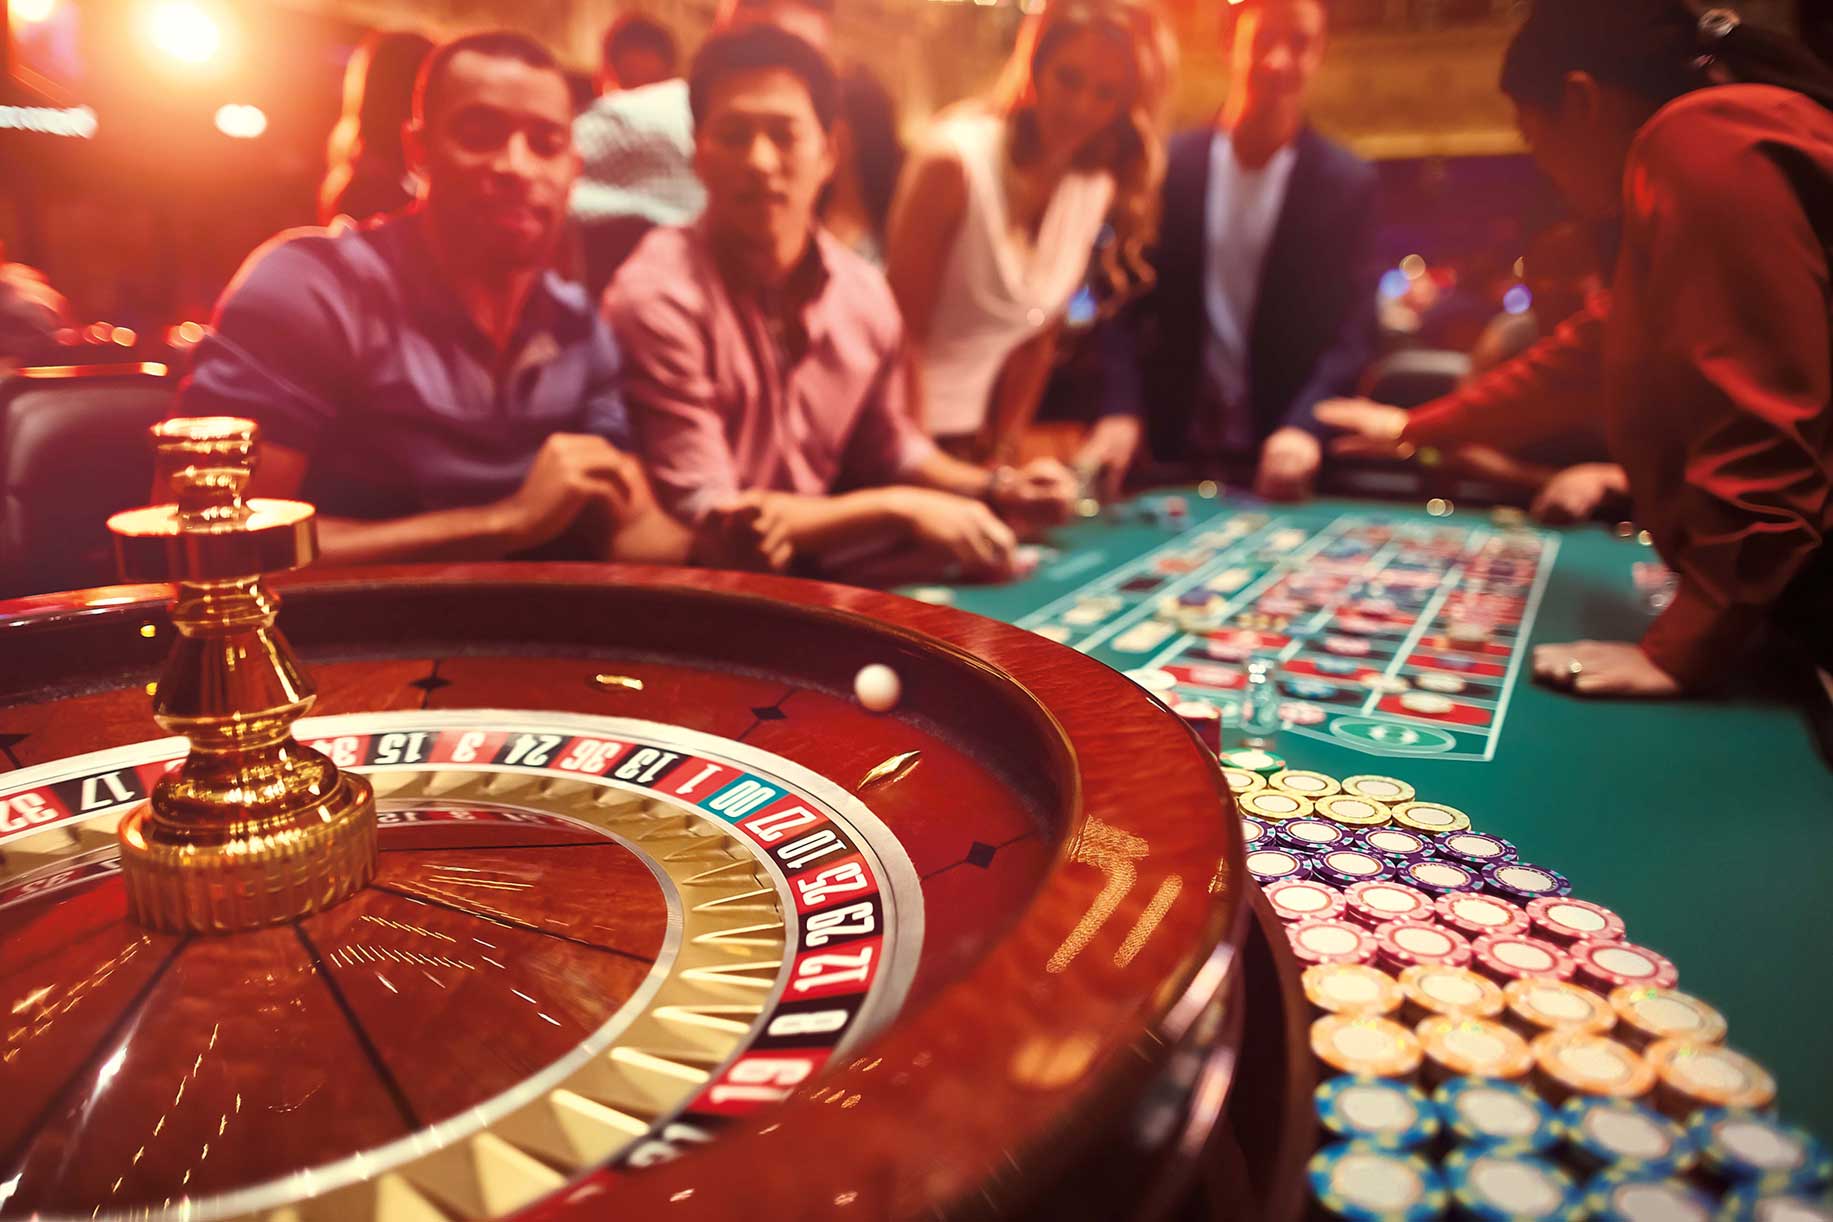 25 Ecu Bonus online casino mit visa card bezahlen Abzüglich Einzahlung 2023